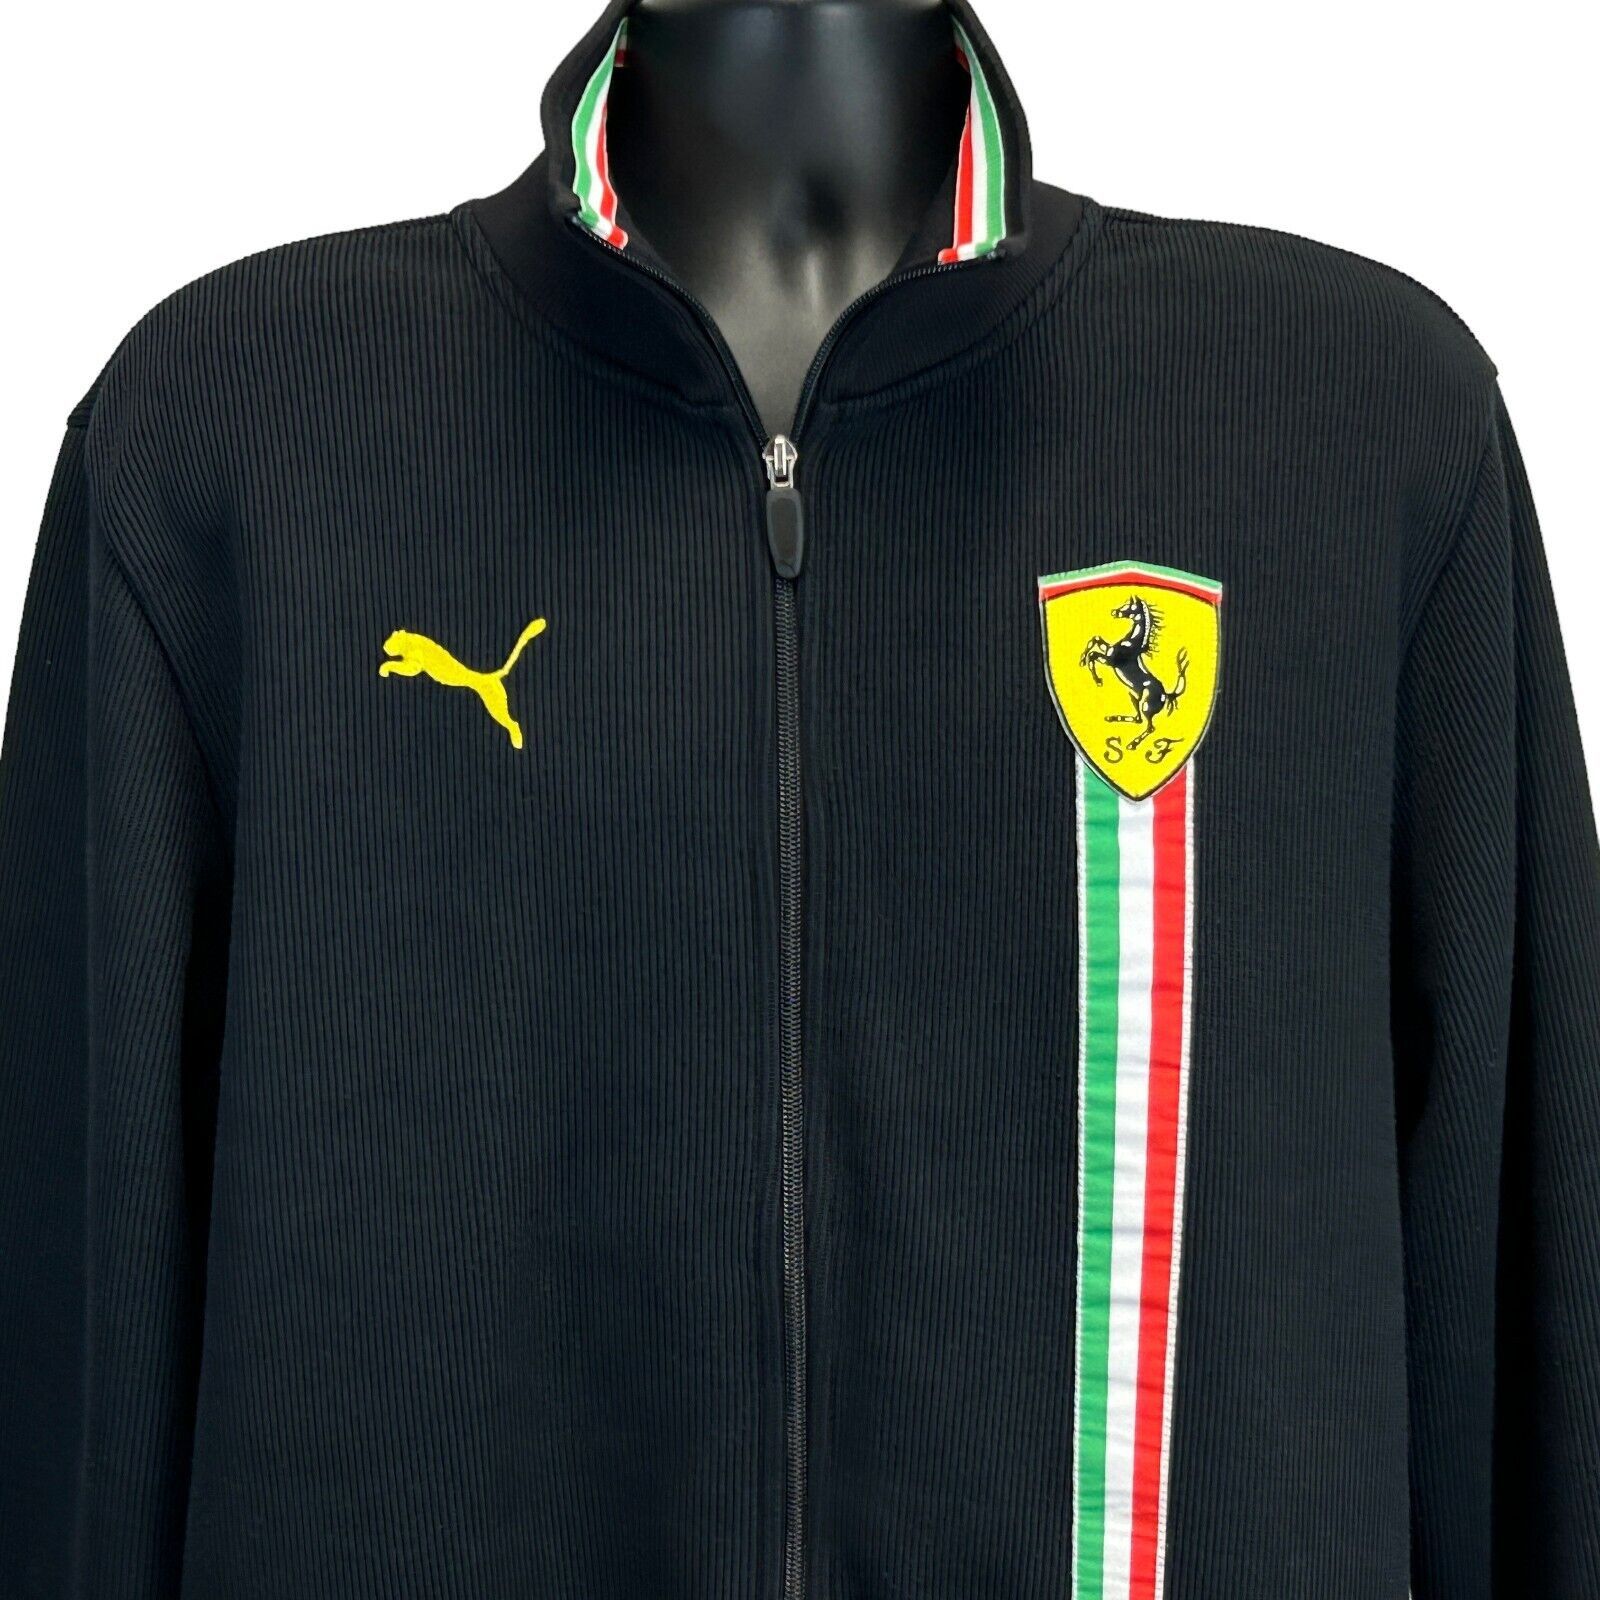 Puma Ferrari x Puma Sweater Jacket F1 Motorsports Auto Racing L | Grailed